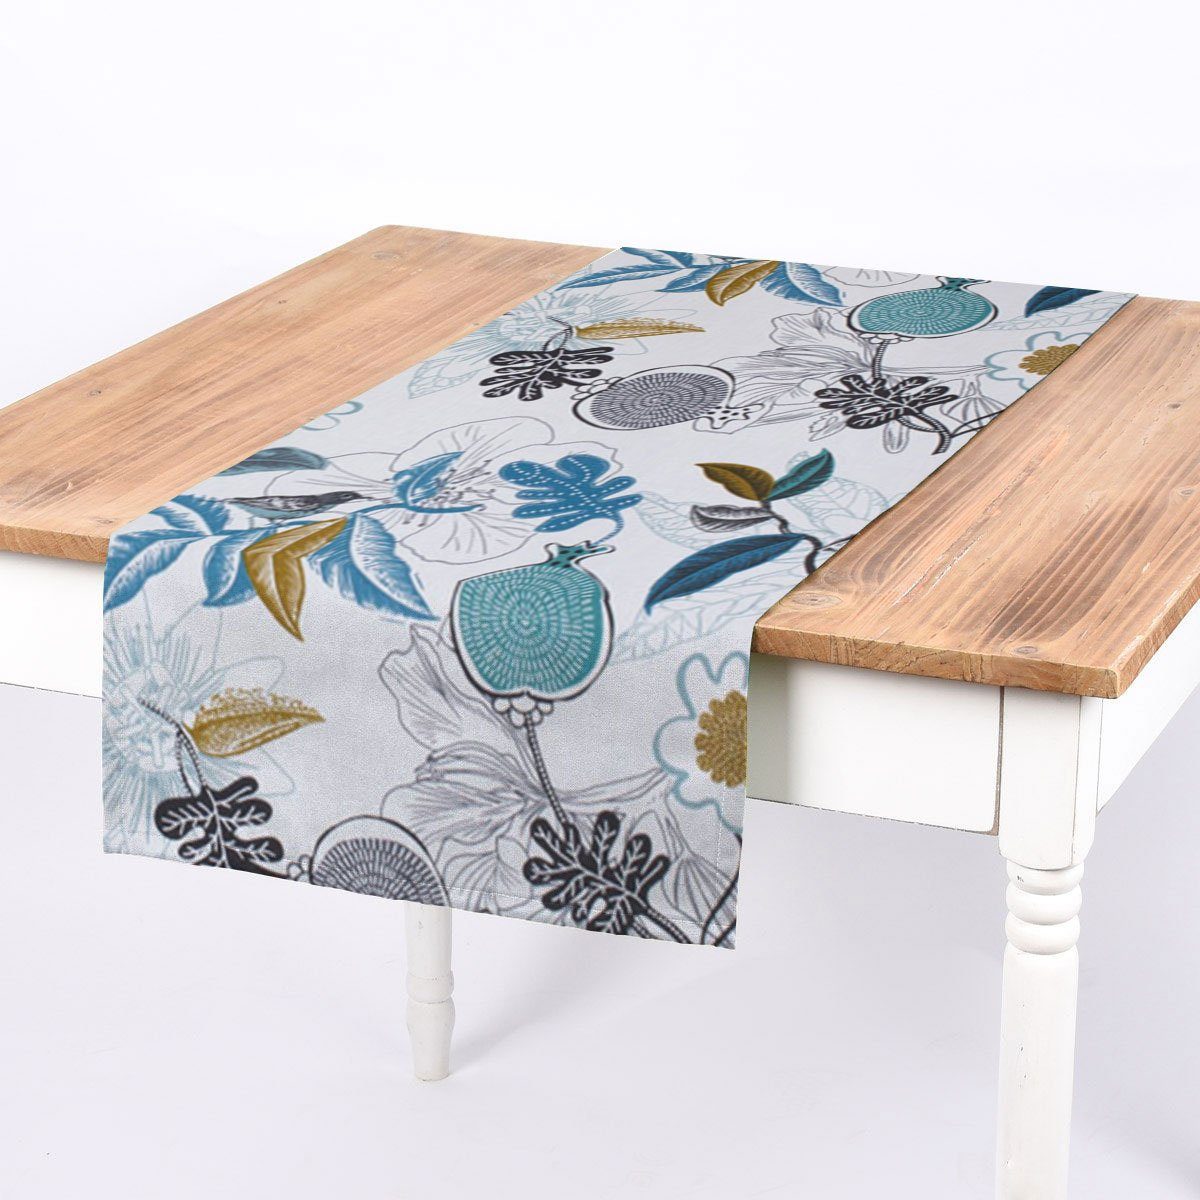 SCHÖNER LEBEN. Tischläufer SCHÖNER LEBEN. Tischläufer Blumen Vogel weiß blau grün schwarz, handmade | Tischläufer